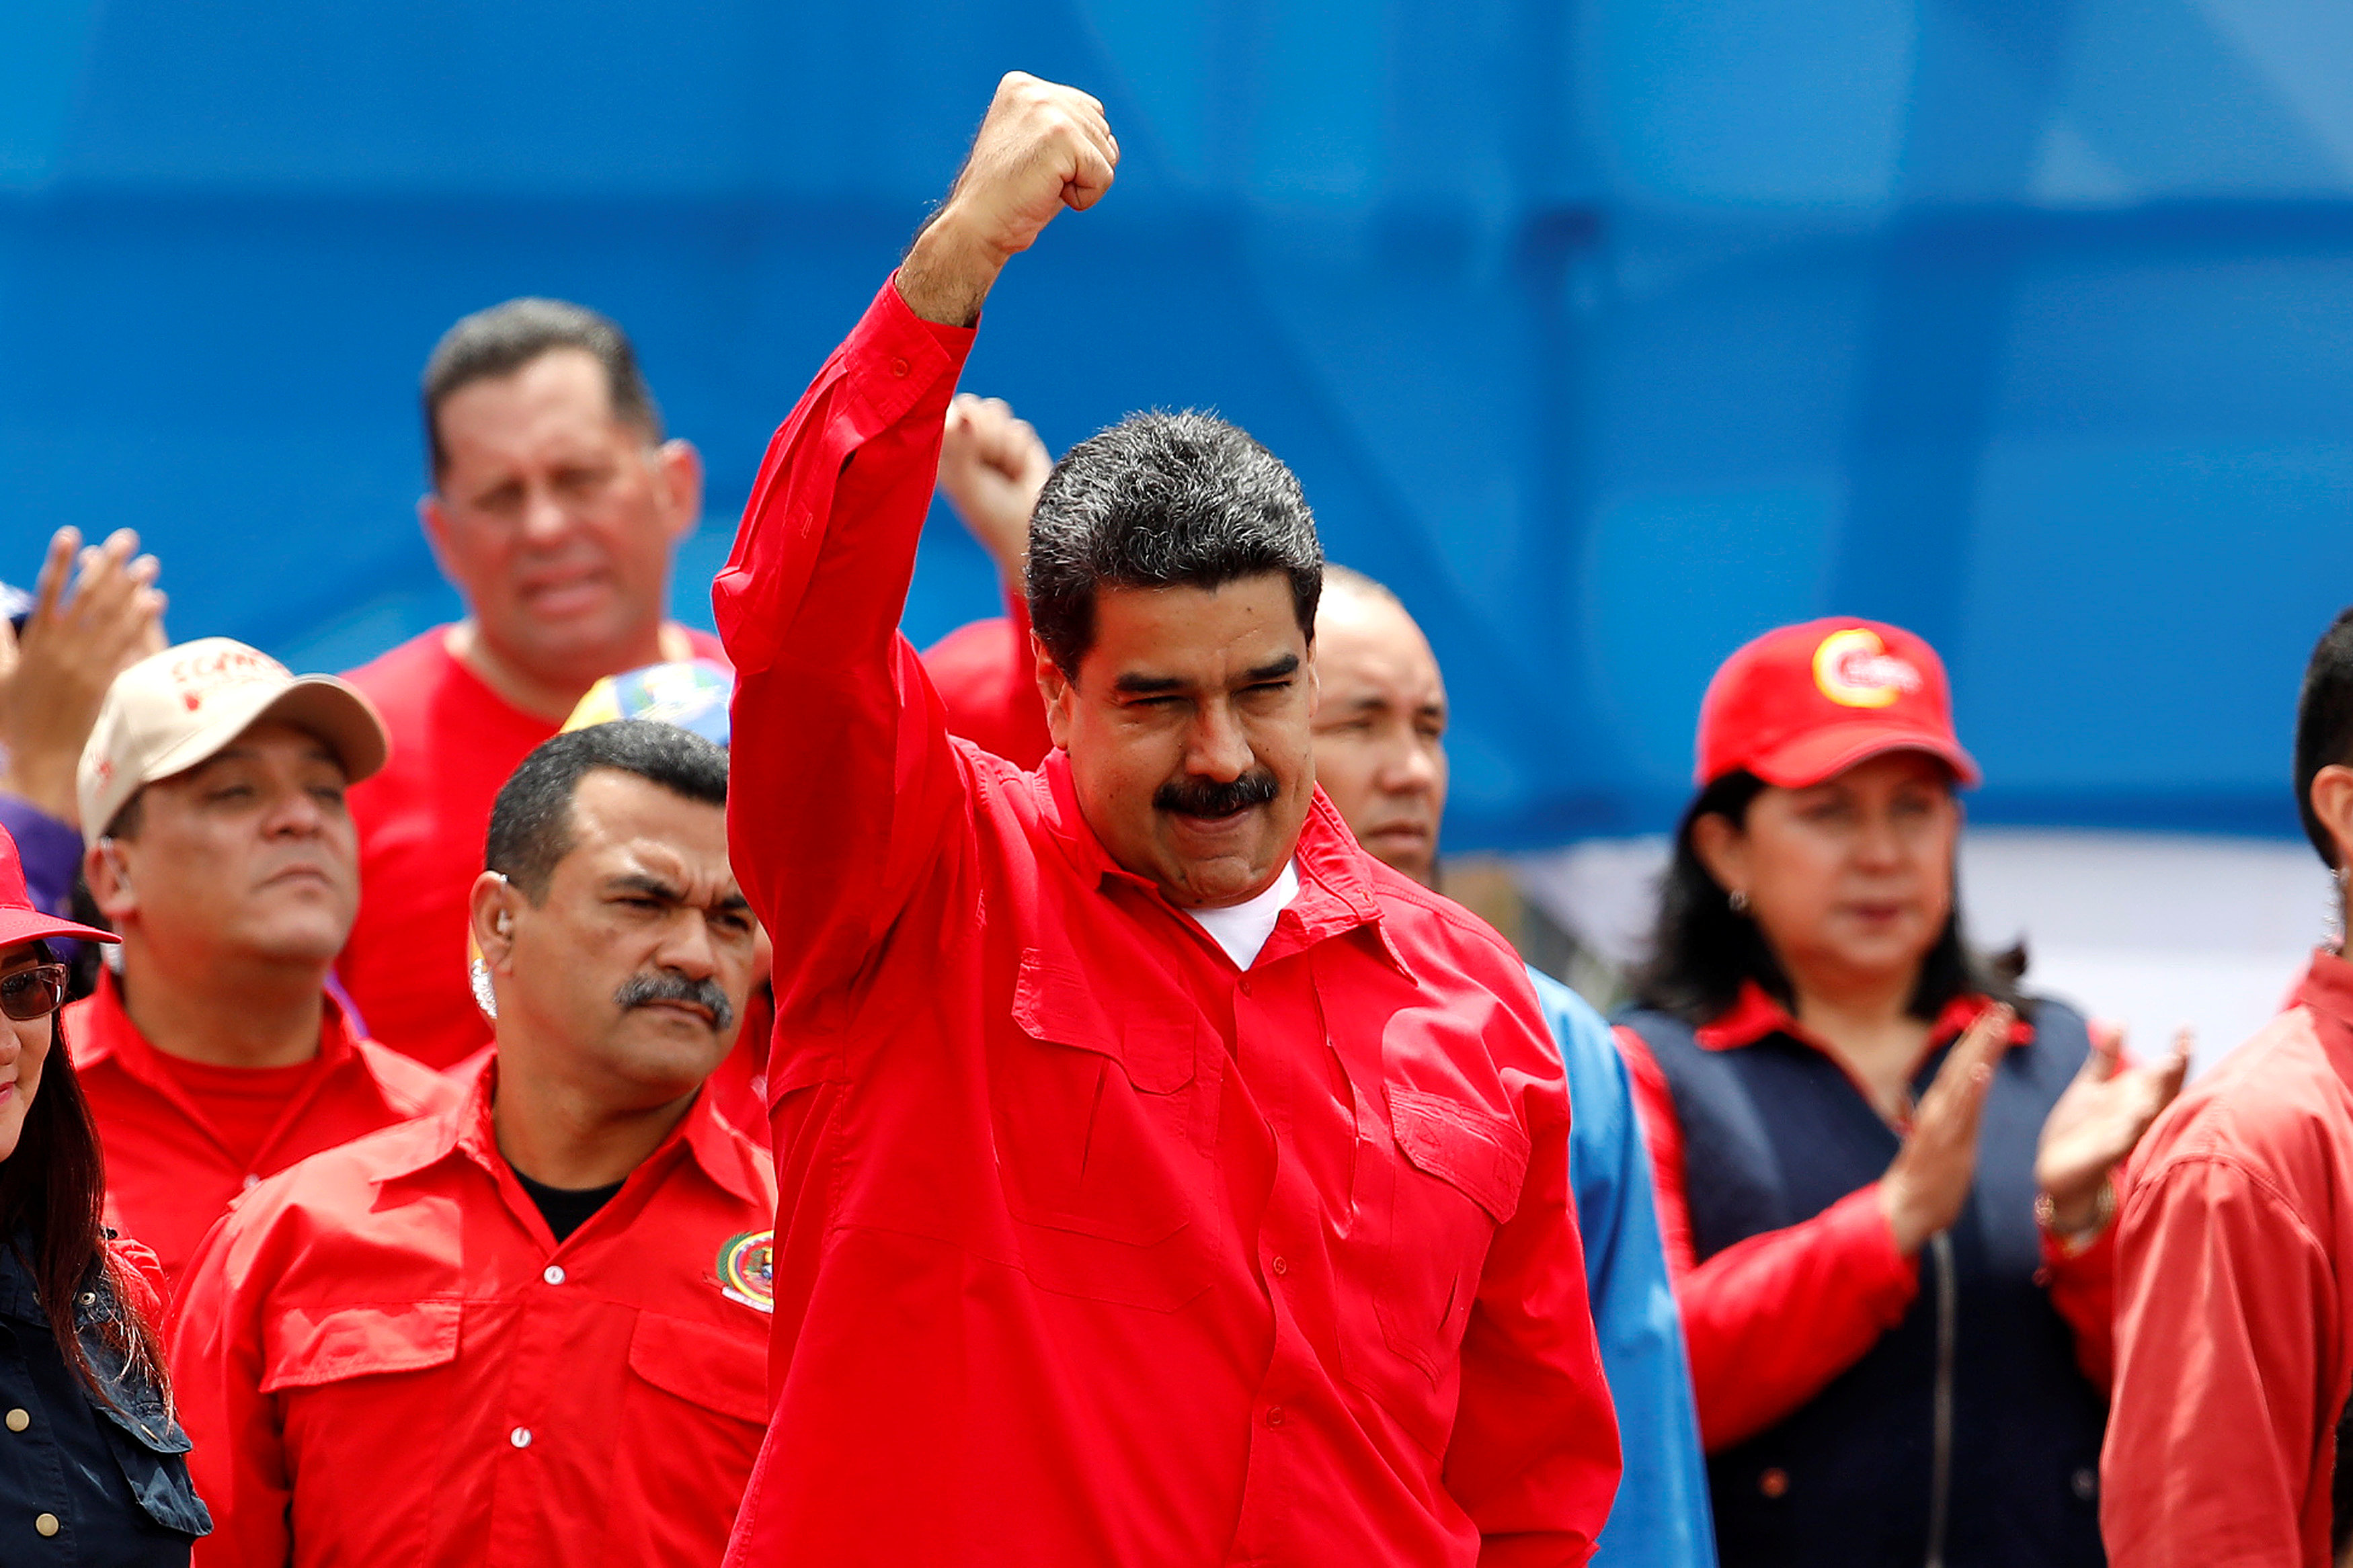 الرئيس الفنزويلى نيكولاس مادورو يشجع مؤيديه